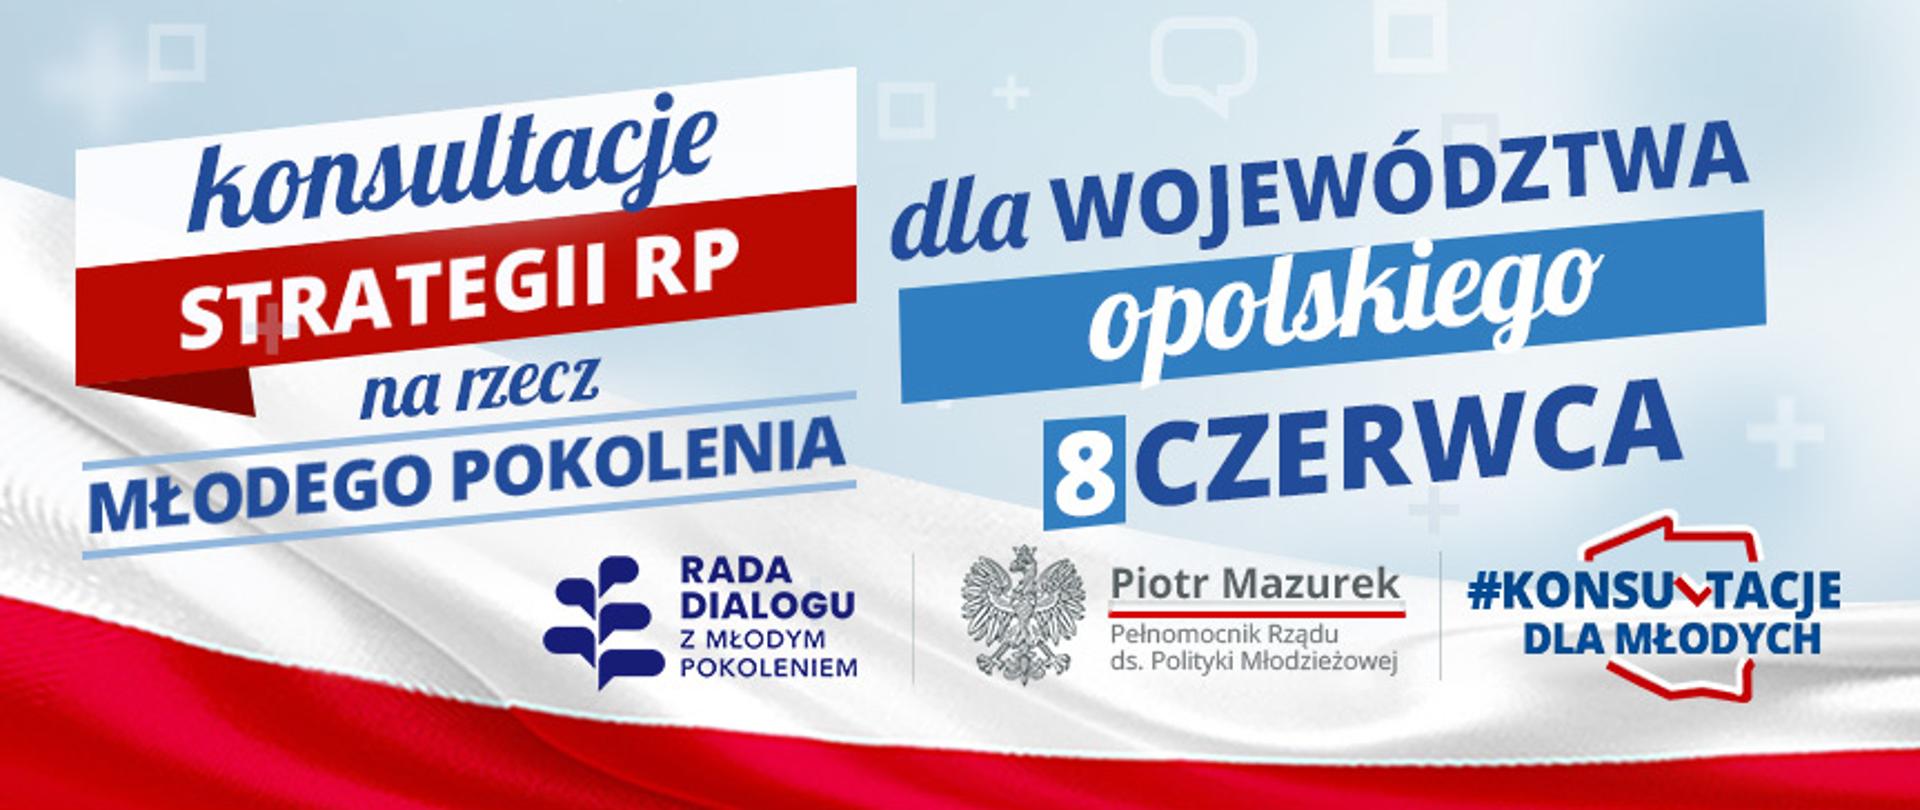 Konsultacje Opole 